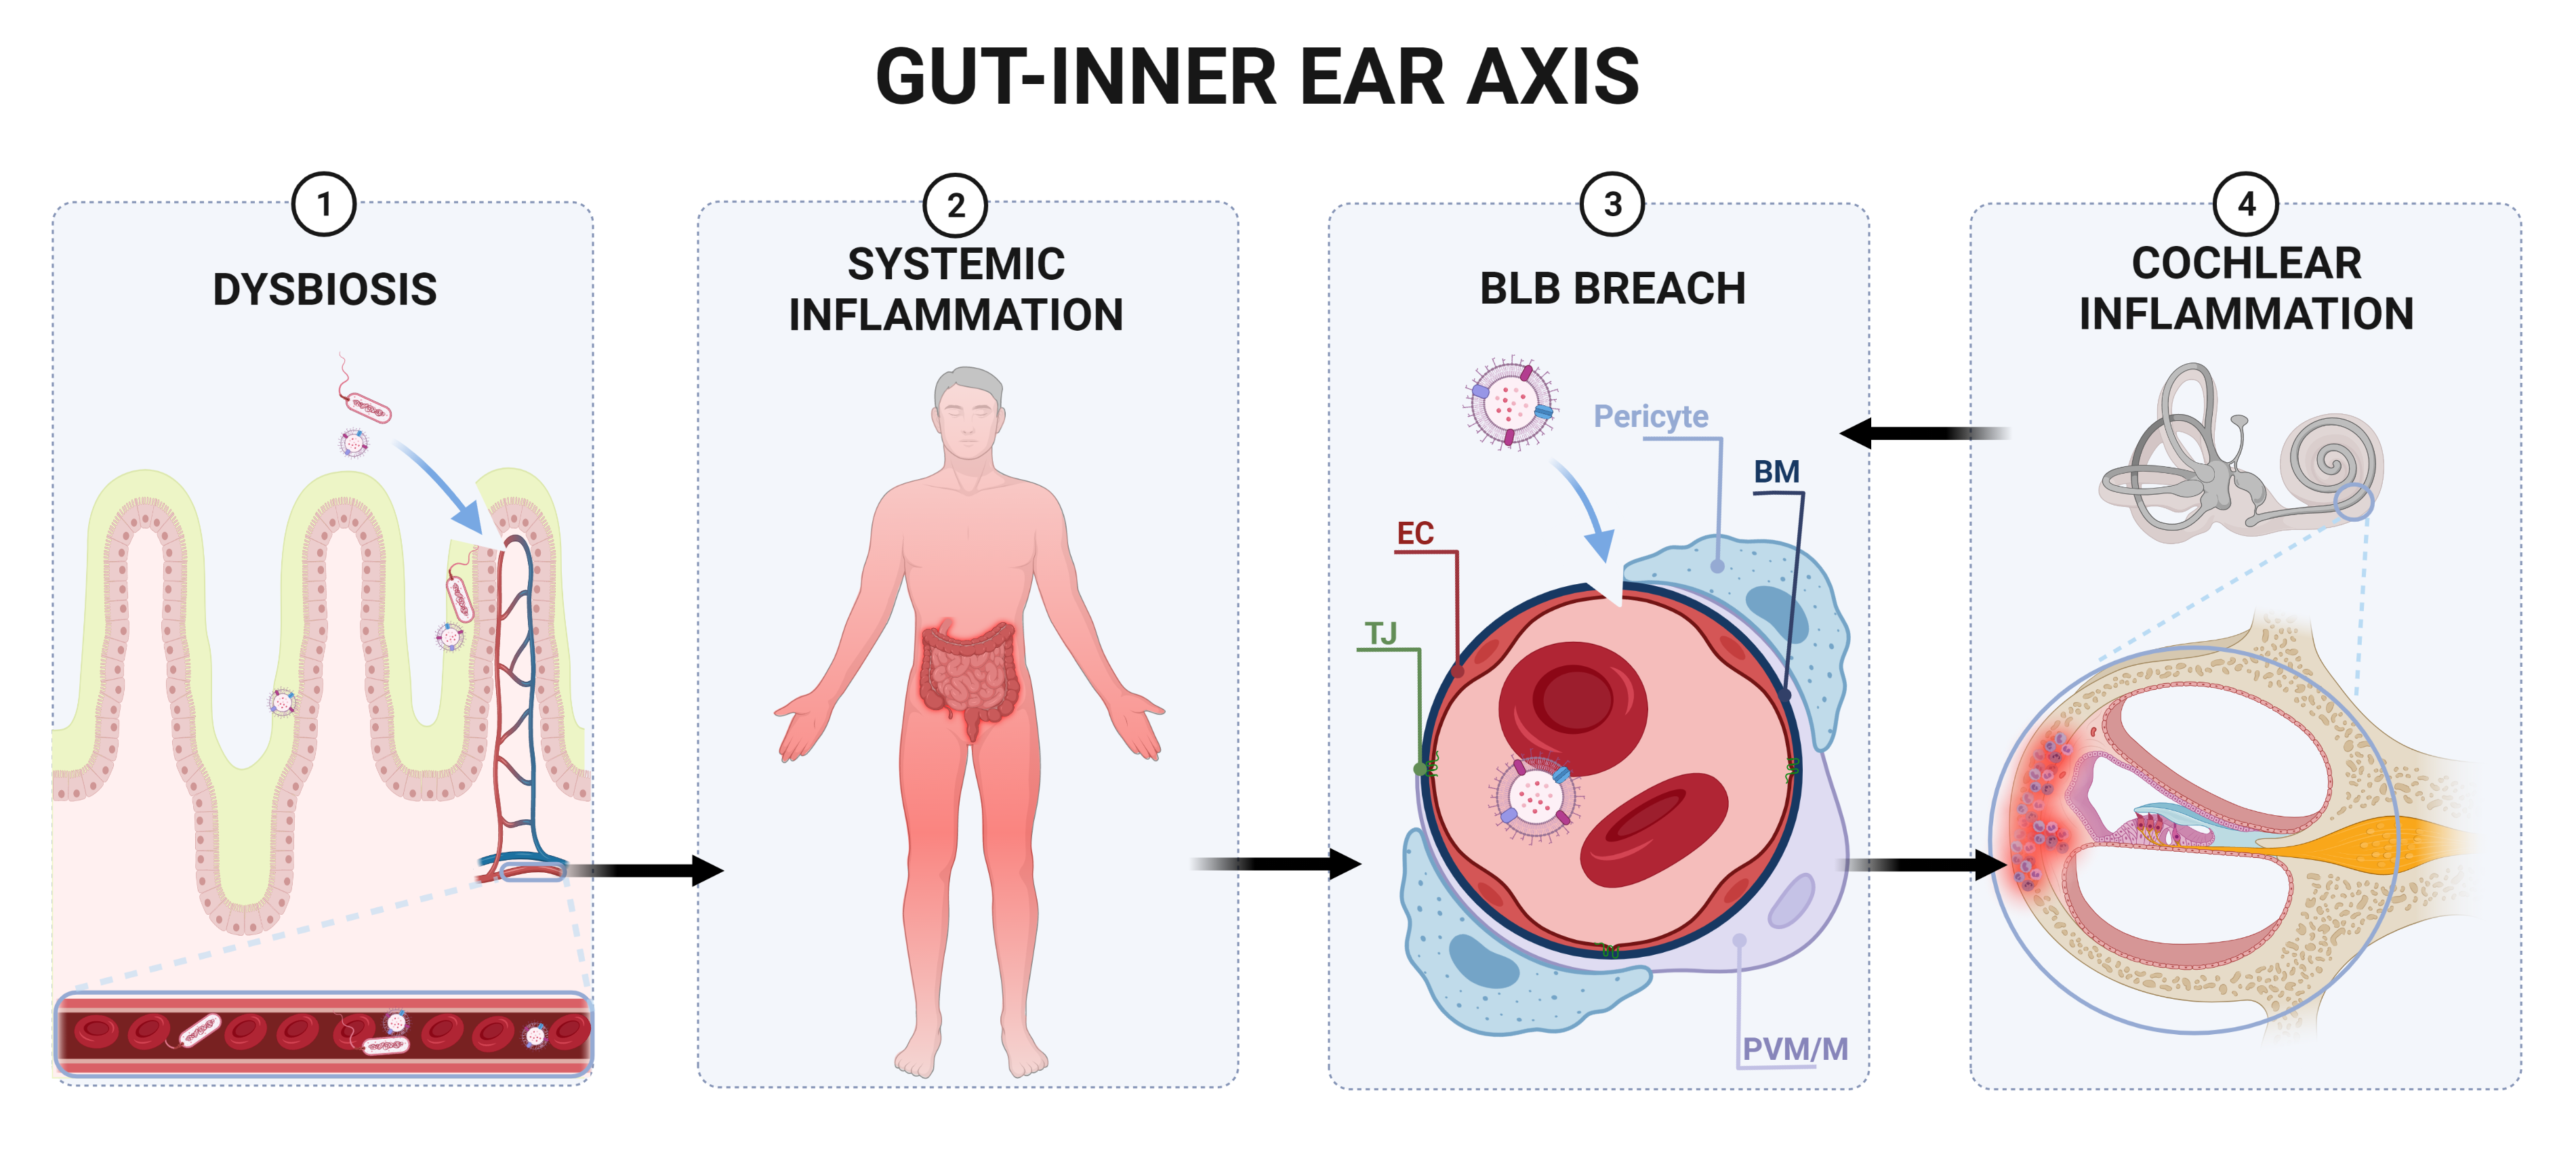 Gut-inner ear axis